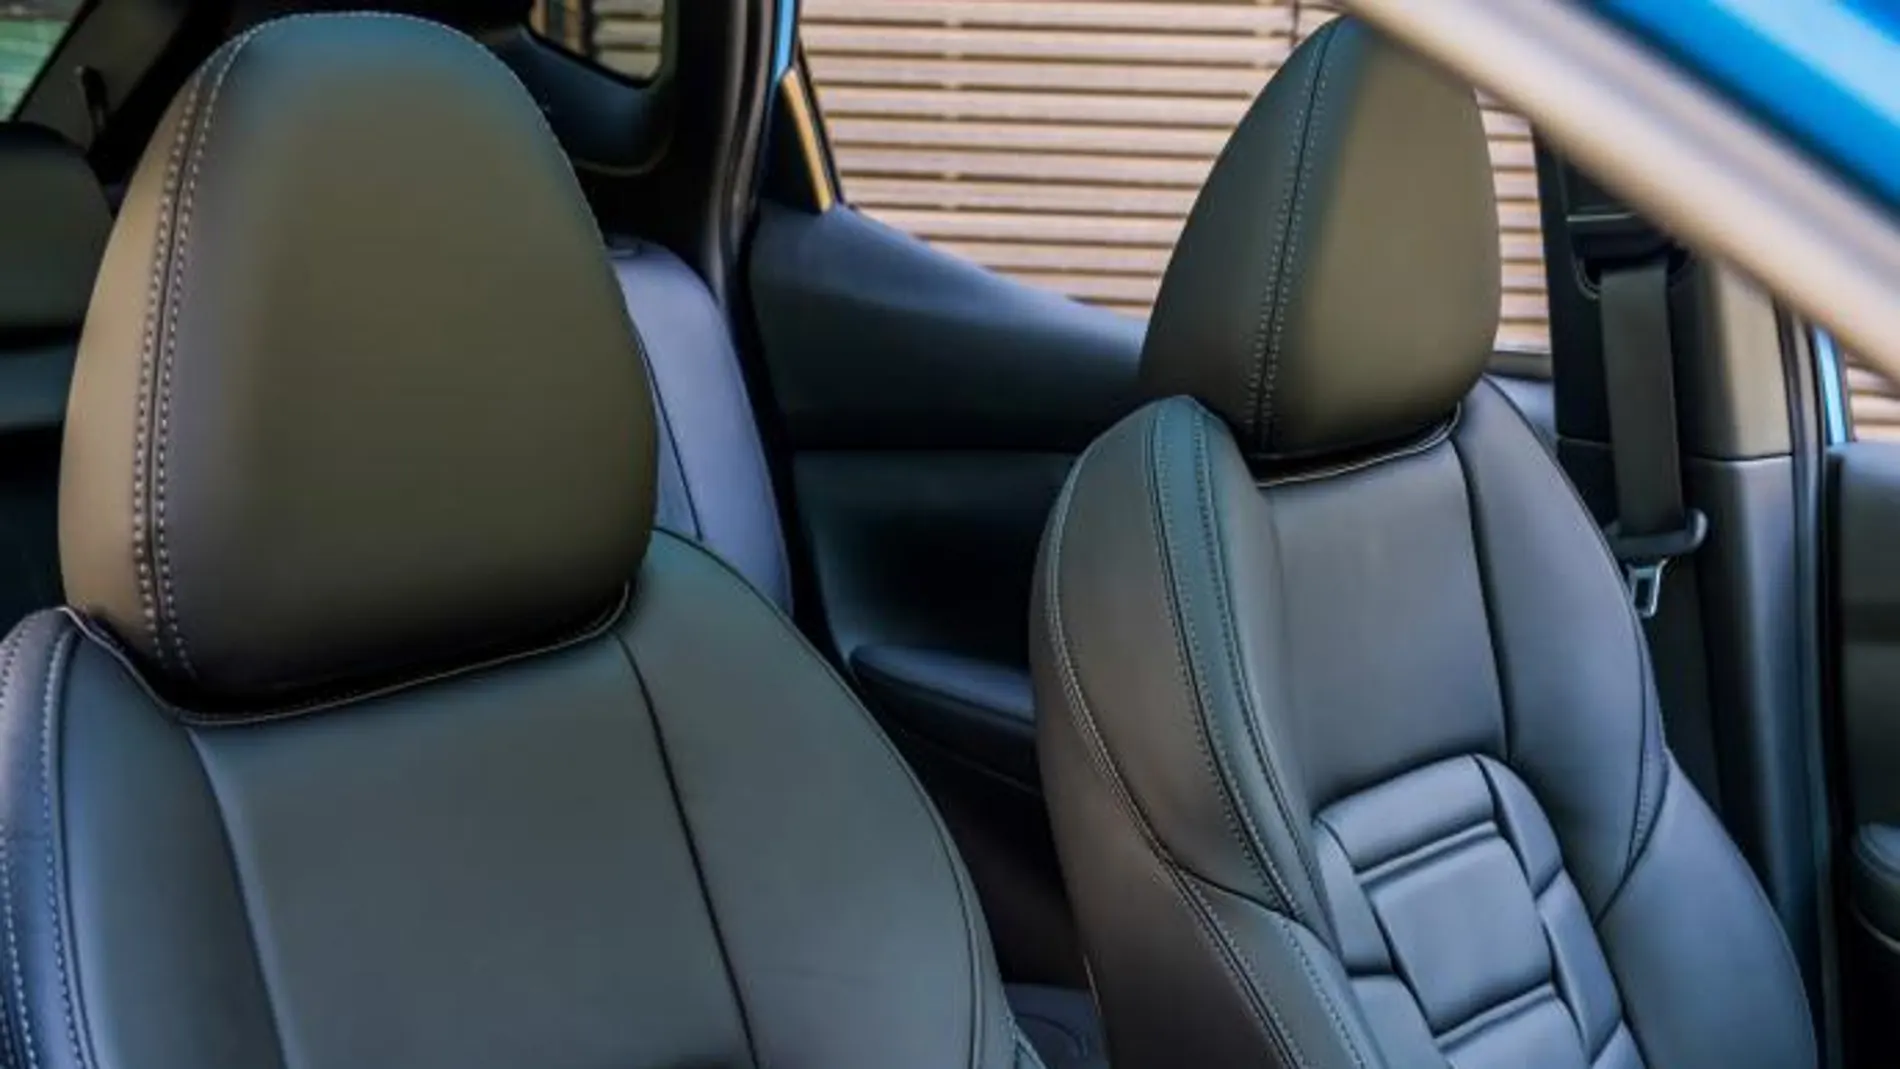 Los nuevos asientos de alta calidad están tapizados en piel Nappa suave de gran calidad y un lujoso acabado acolchado en 3D en los paneles centrales.